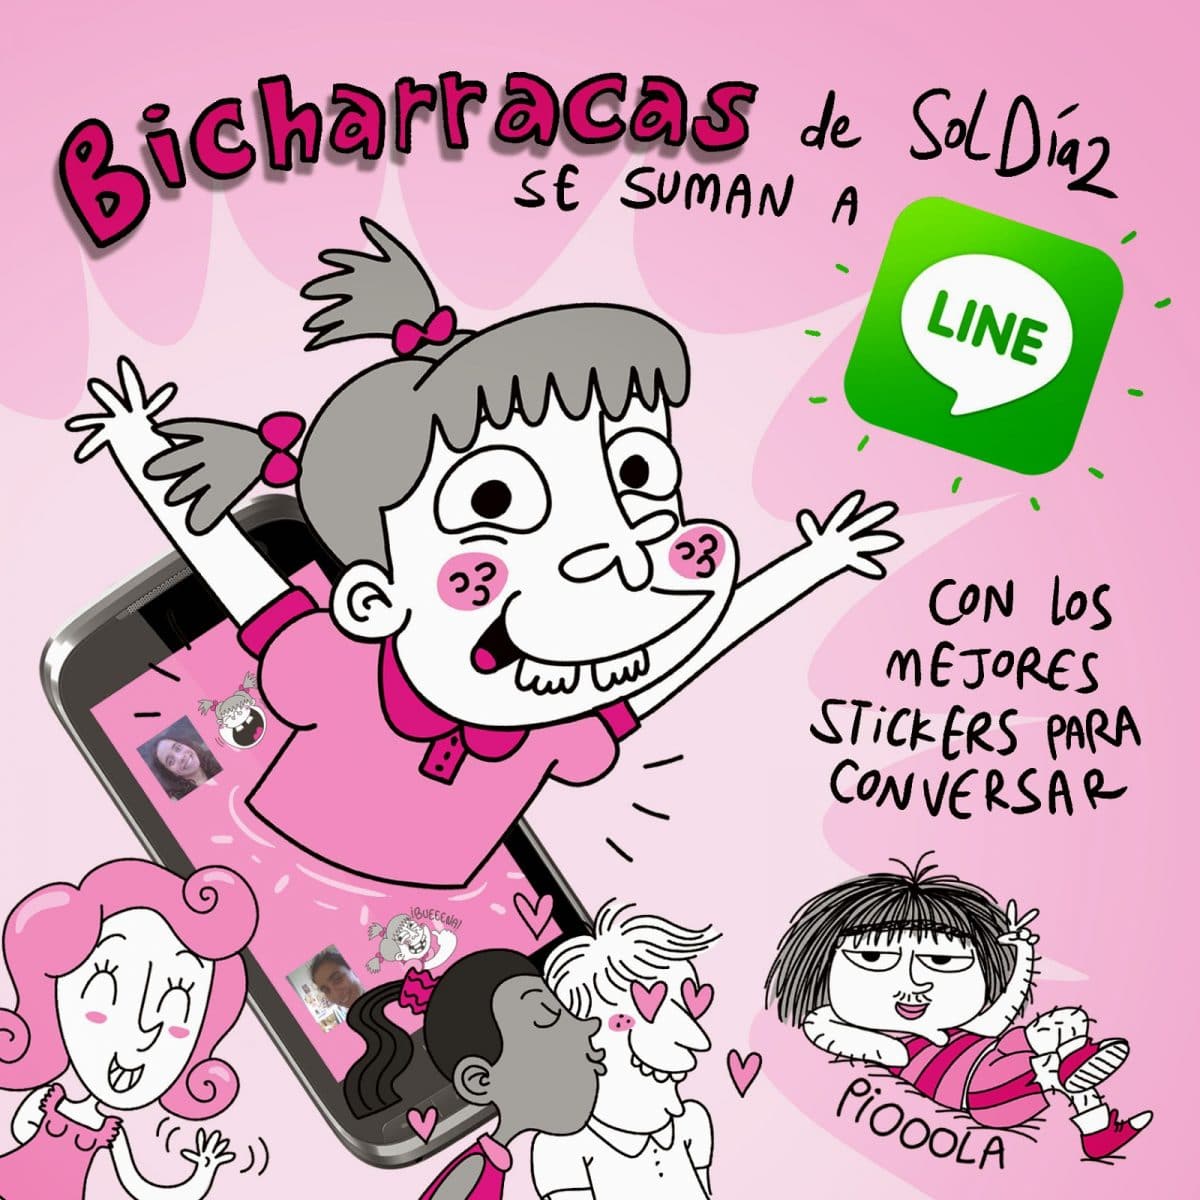 Stickers de Bicharracas en LINE!